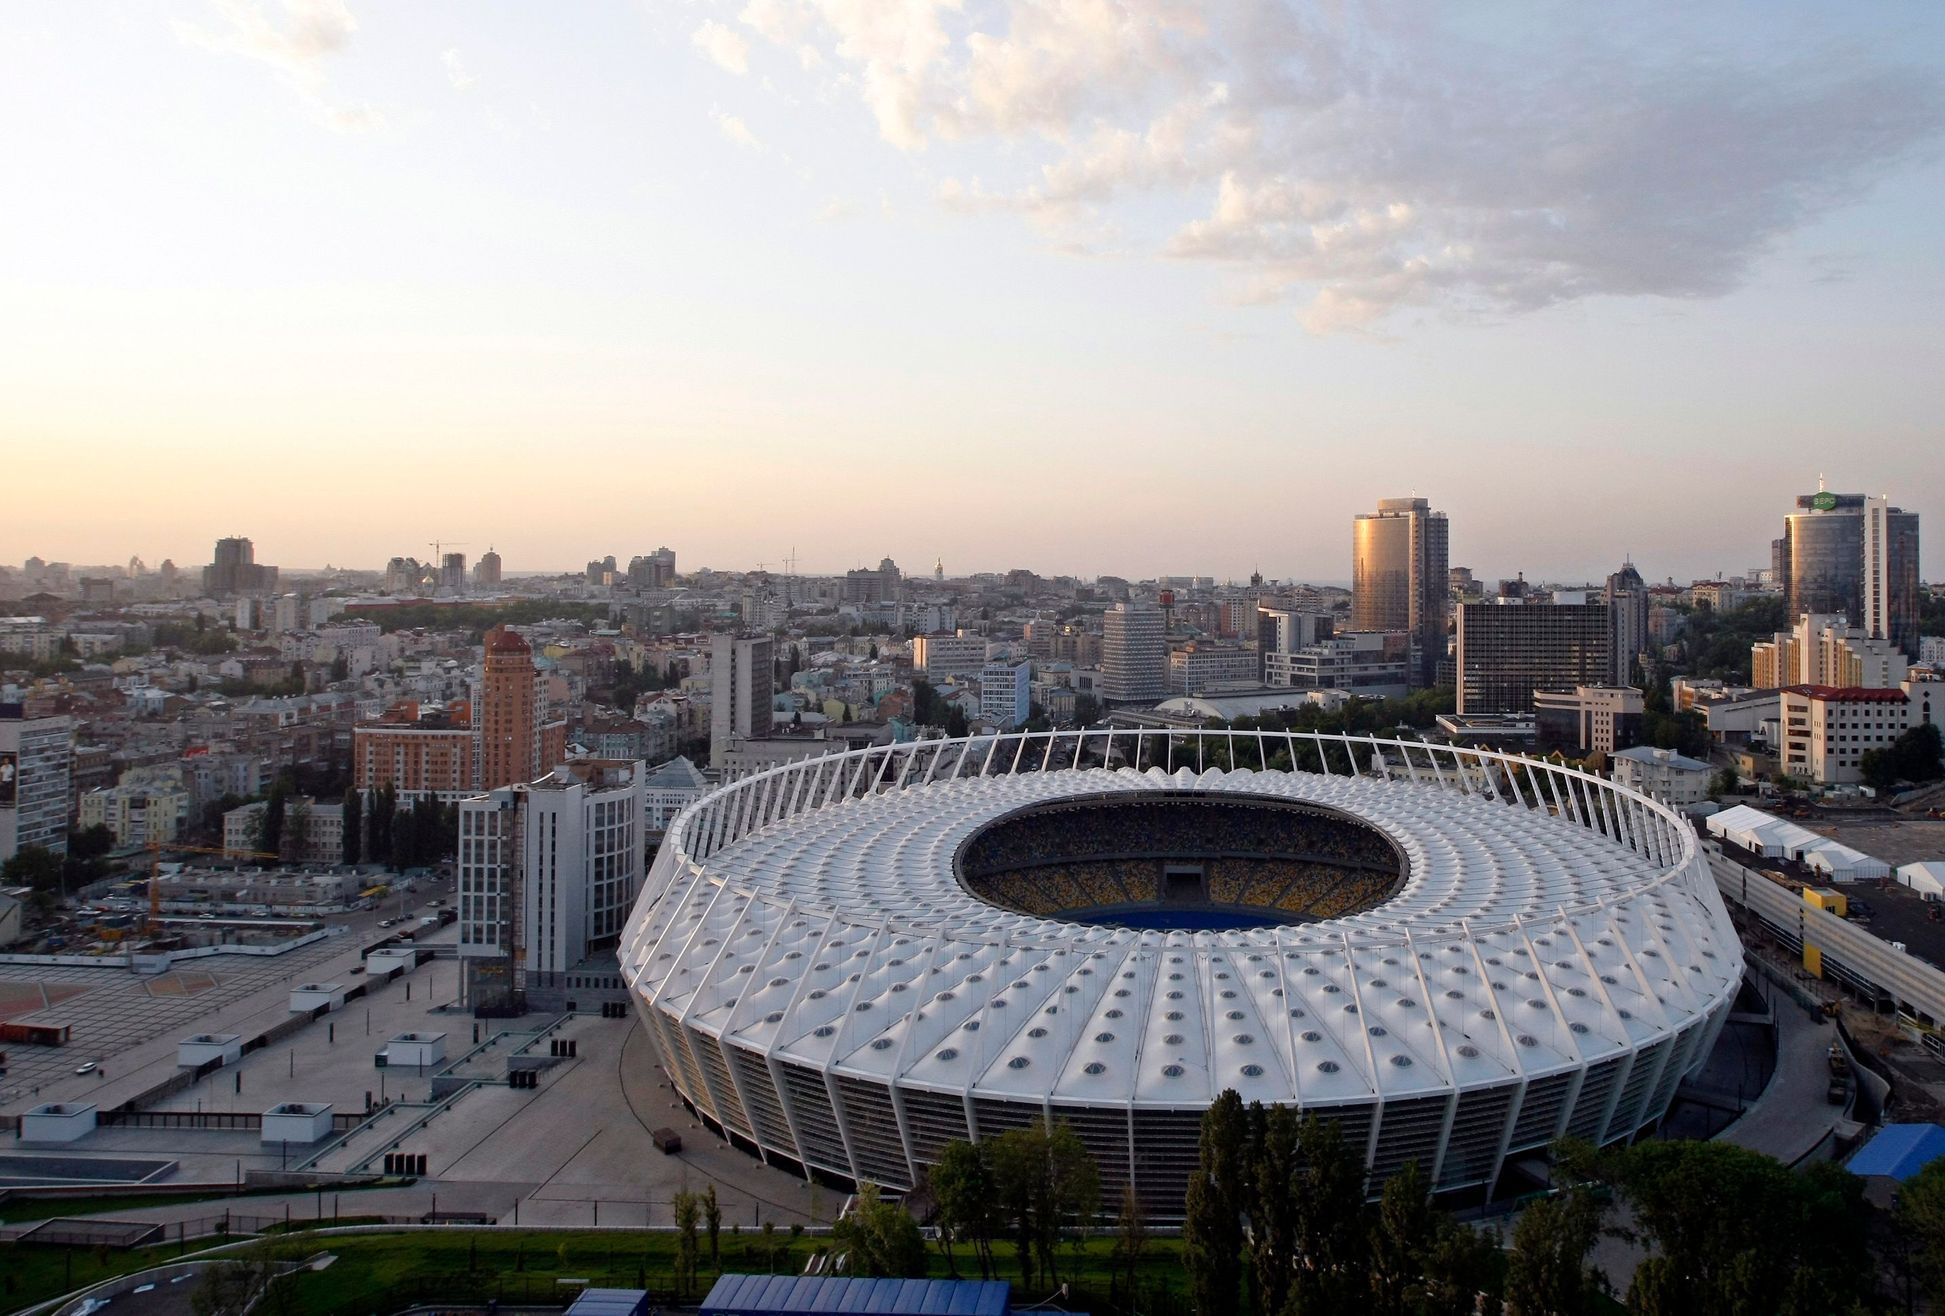 Stadiony pro Euro 2012: Olympijský stadion v Kyjevě